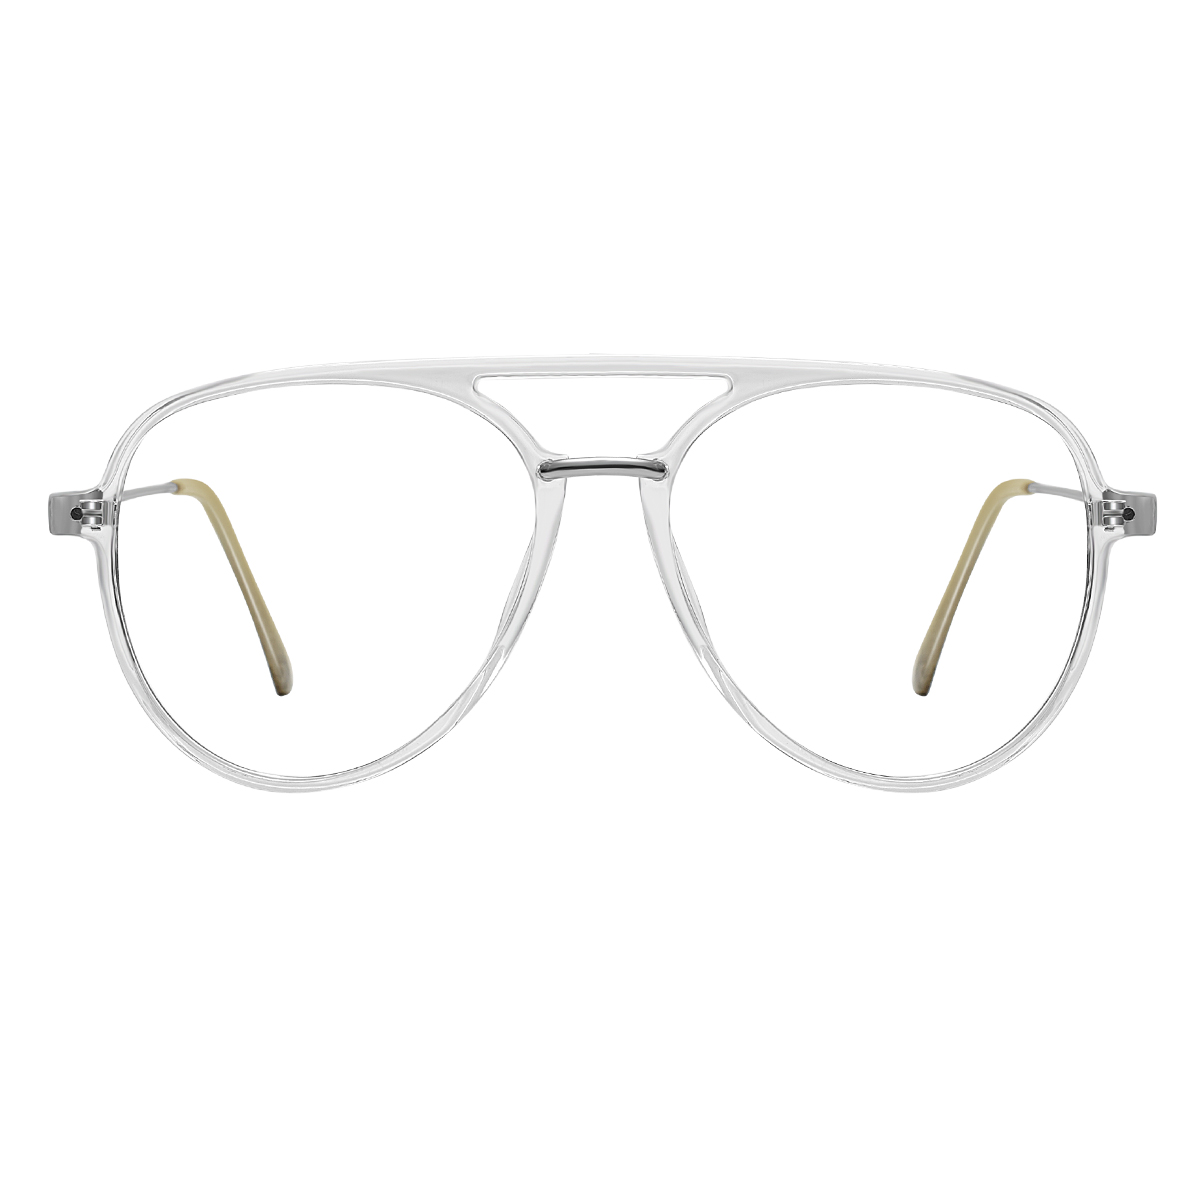 Troy - Aviator Gold Glasses for Men - EFE